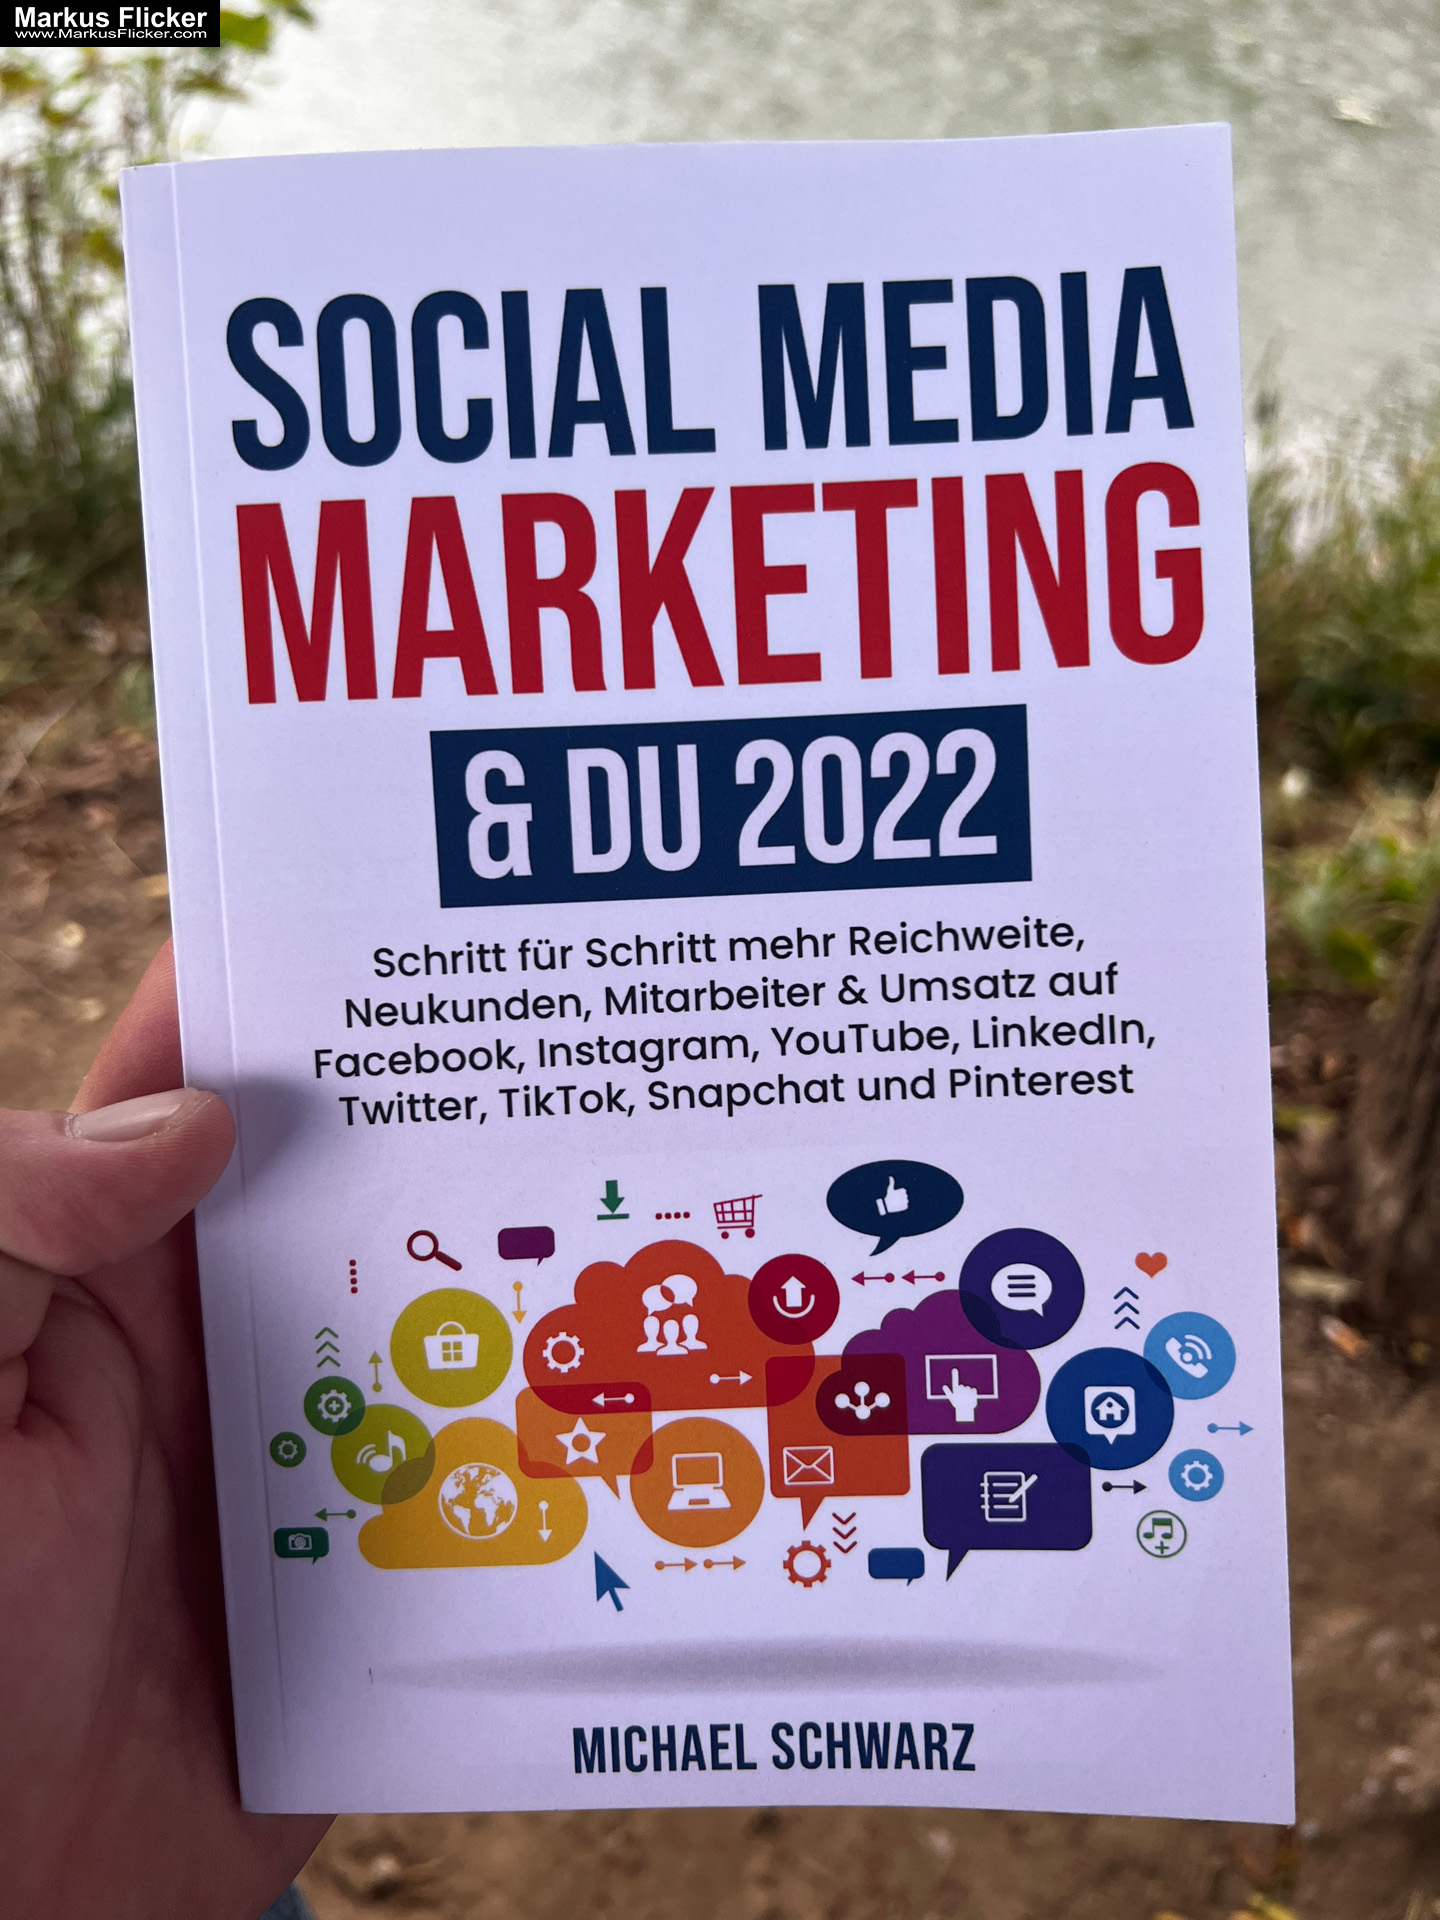 Social Media Marketing & DU 2022: Schritt für Schritt mehr Reichweite, Neukunden, Mitarbeiter & Umsatz auf Facebook, Instagram, YouTube, LinkedIn, Twitter, TikTok, Snapchat und Pinterest von Michael Schwarz